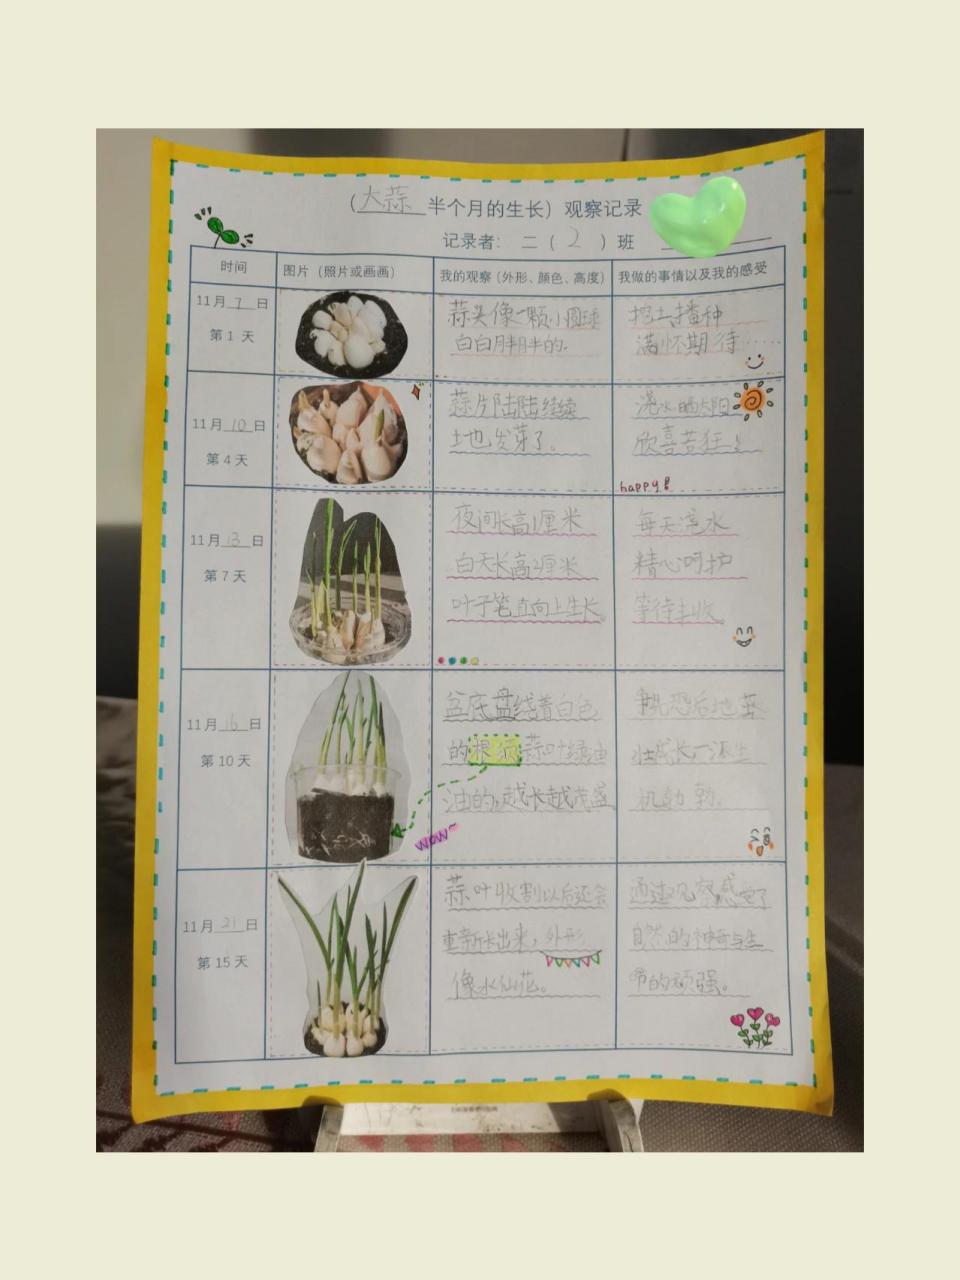 大蒜种植记录表图片图片